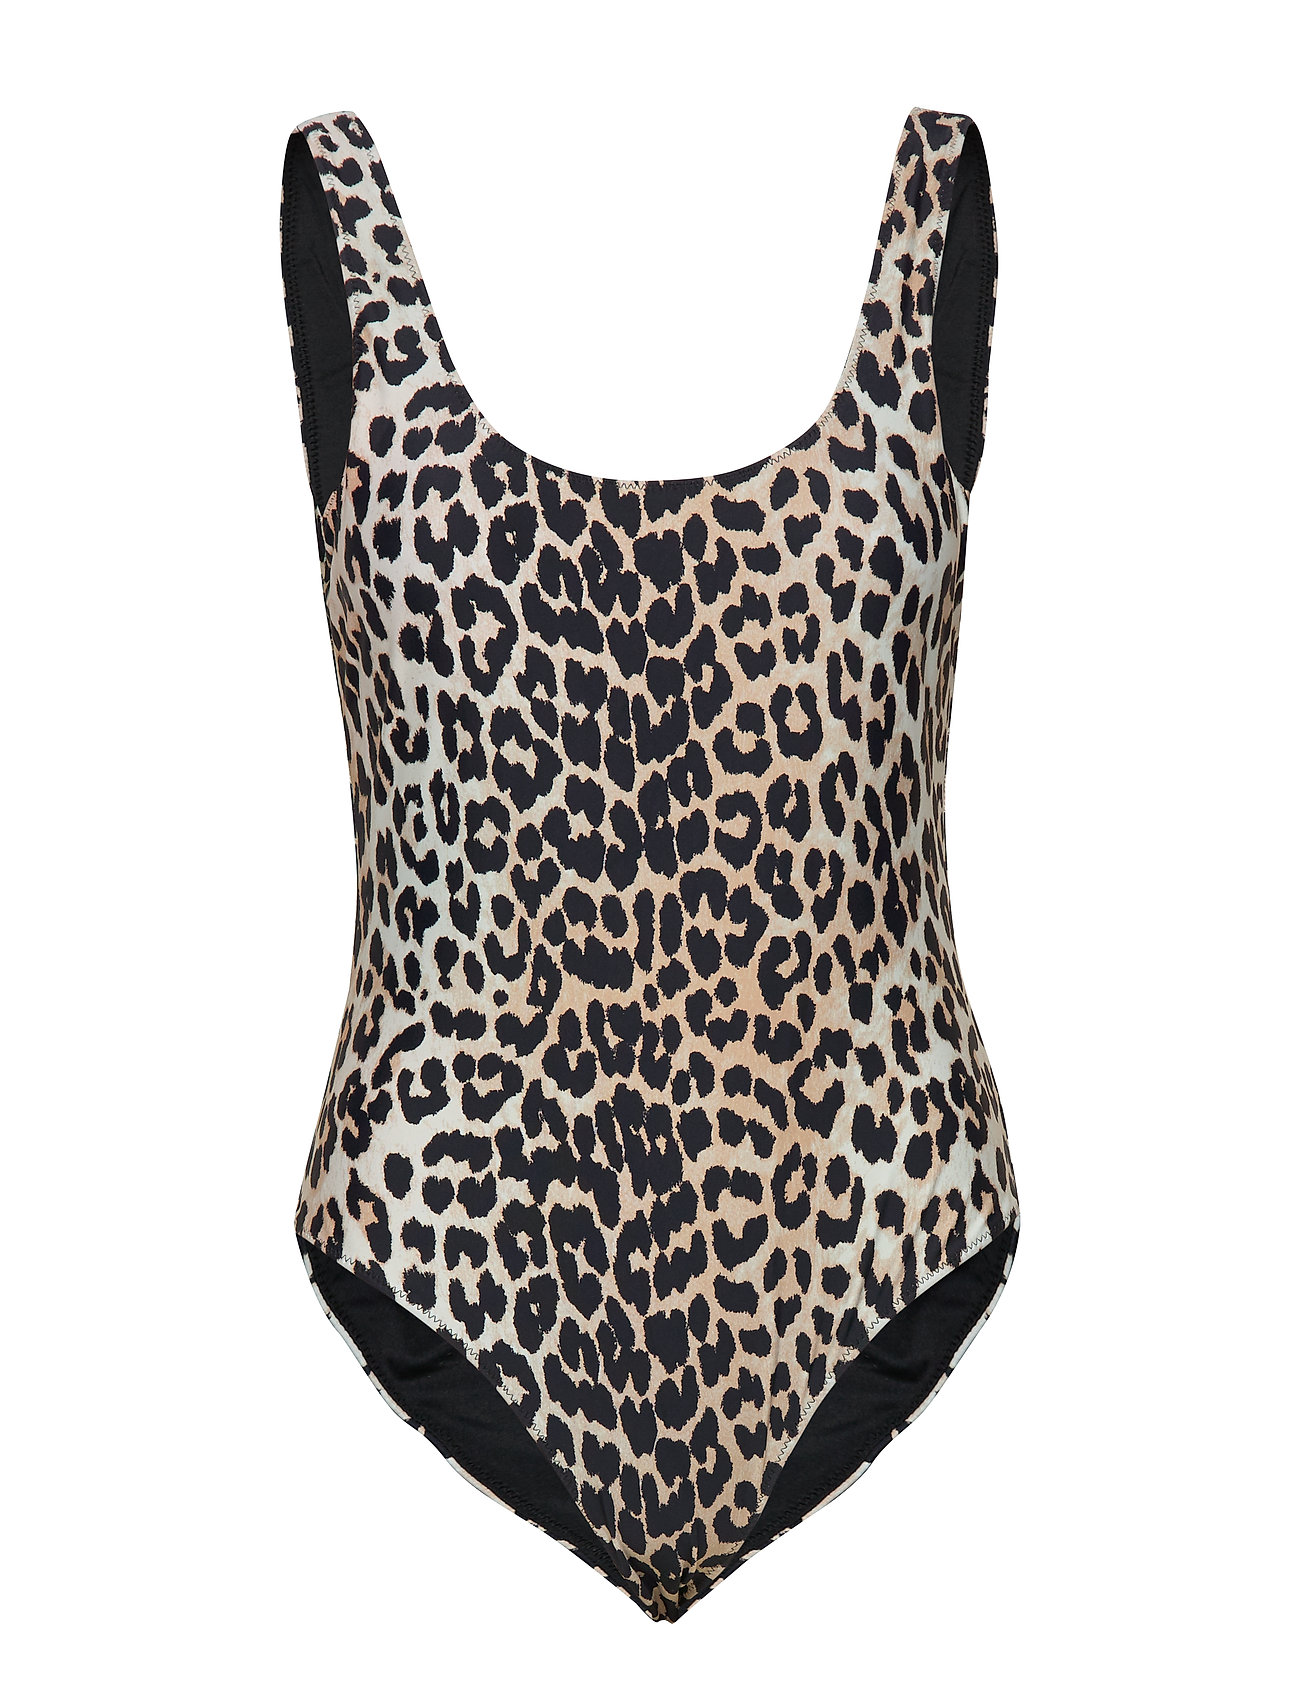 Ganni Recycled Printed Swimwear (Leopard), 599.40 kr | Stort udvalg af ...